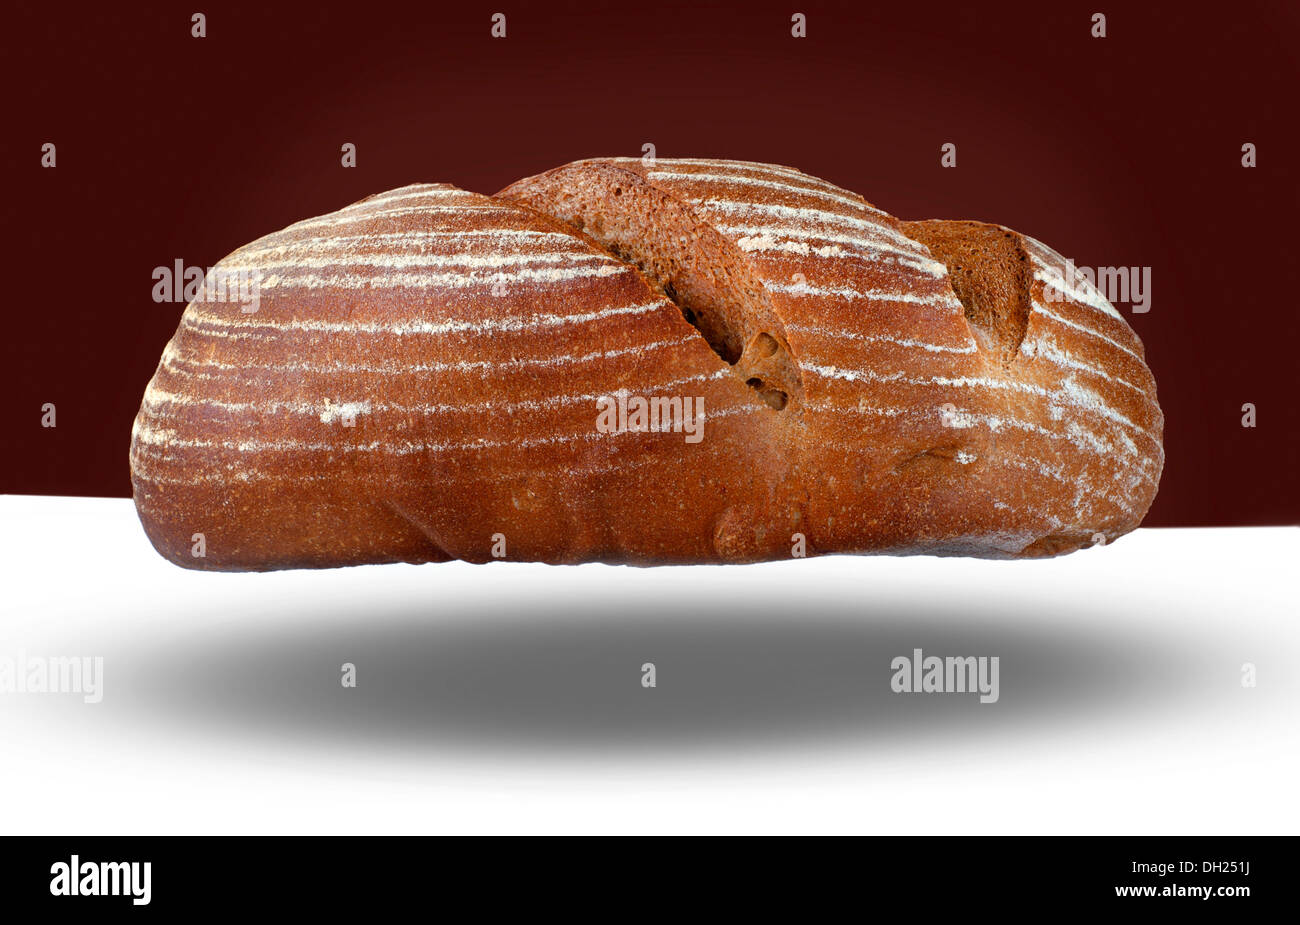 Bread - loaf of dark rye sourdough bread Stock Photo